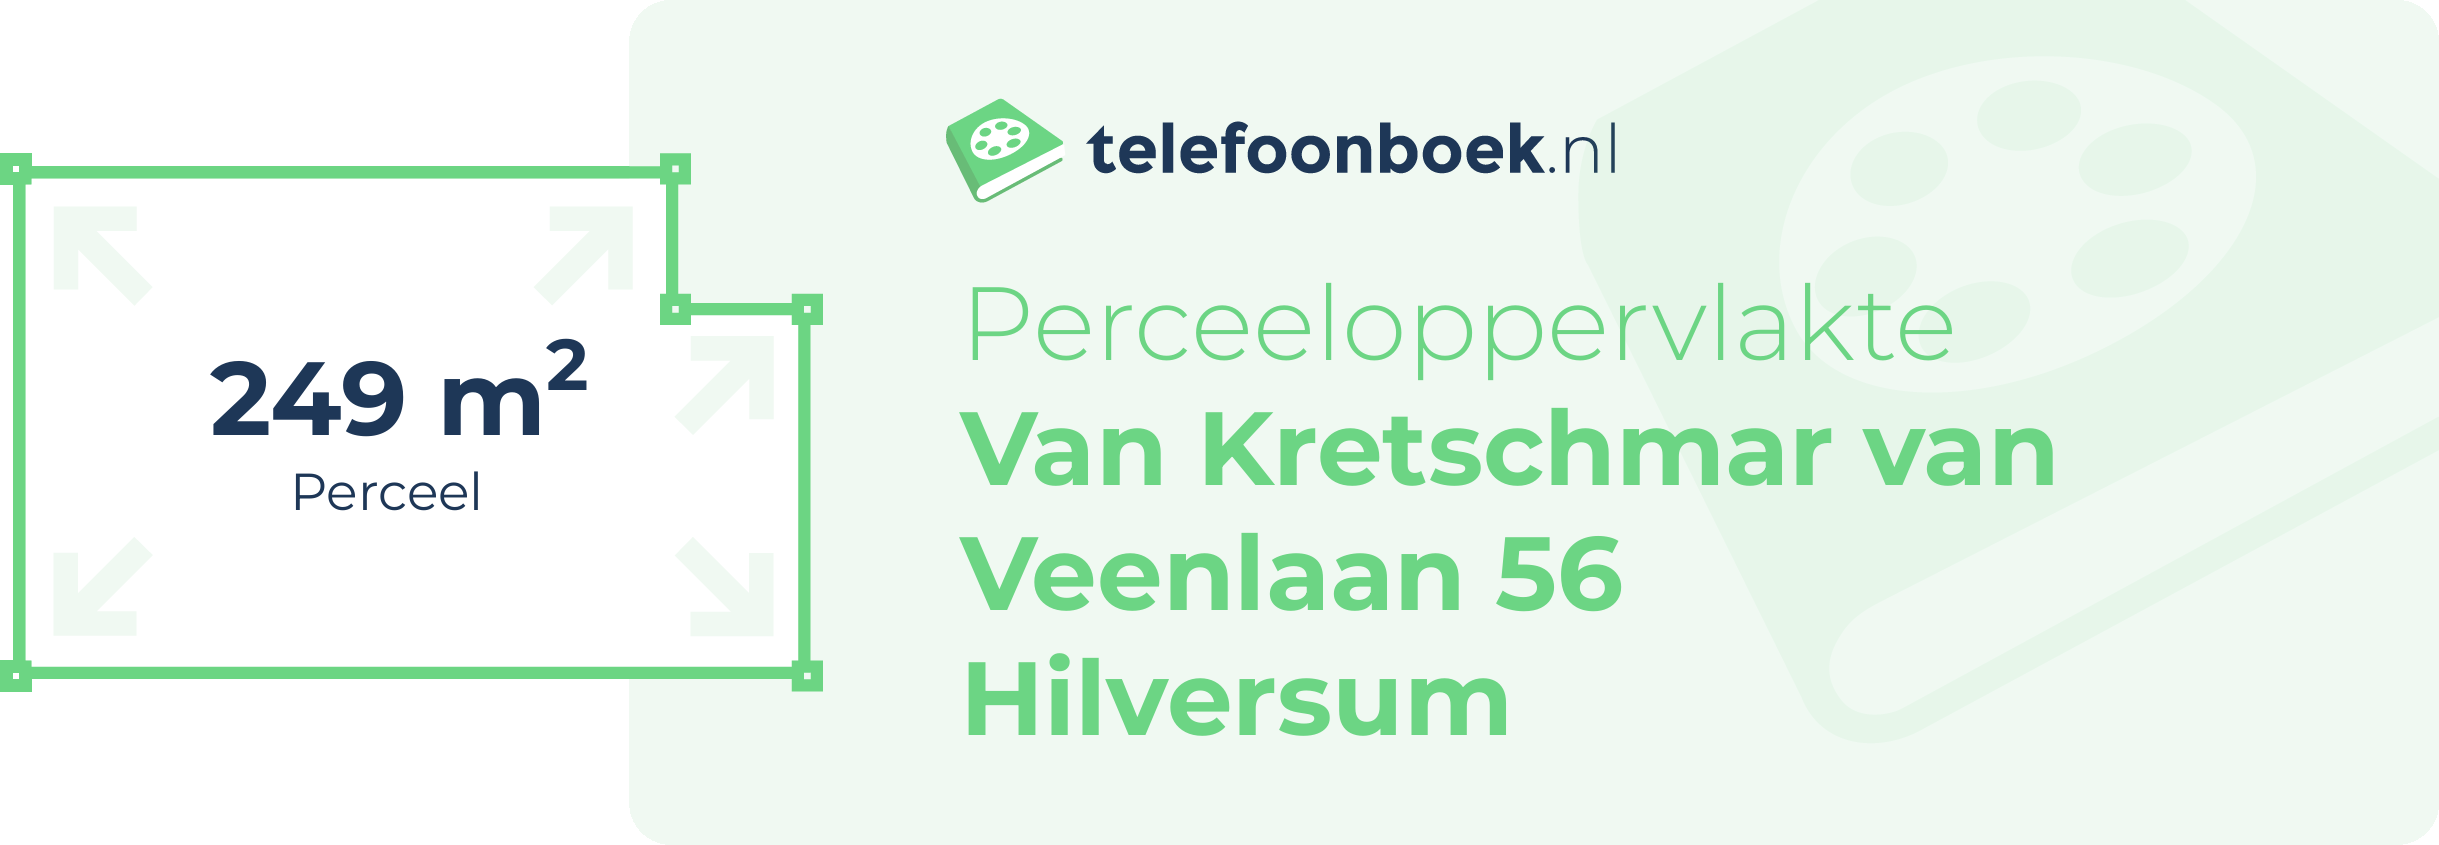 Perceeloppervlakte Van Kretschmar Van Veenlaan 56 Hilversum